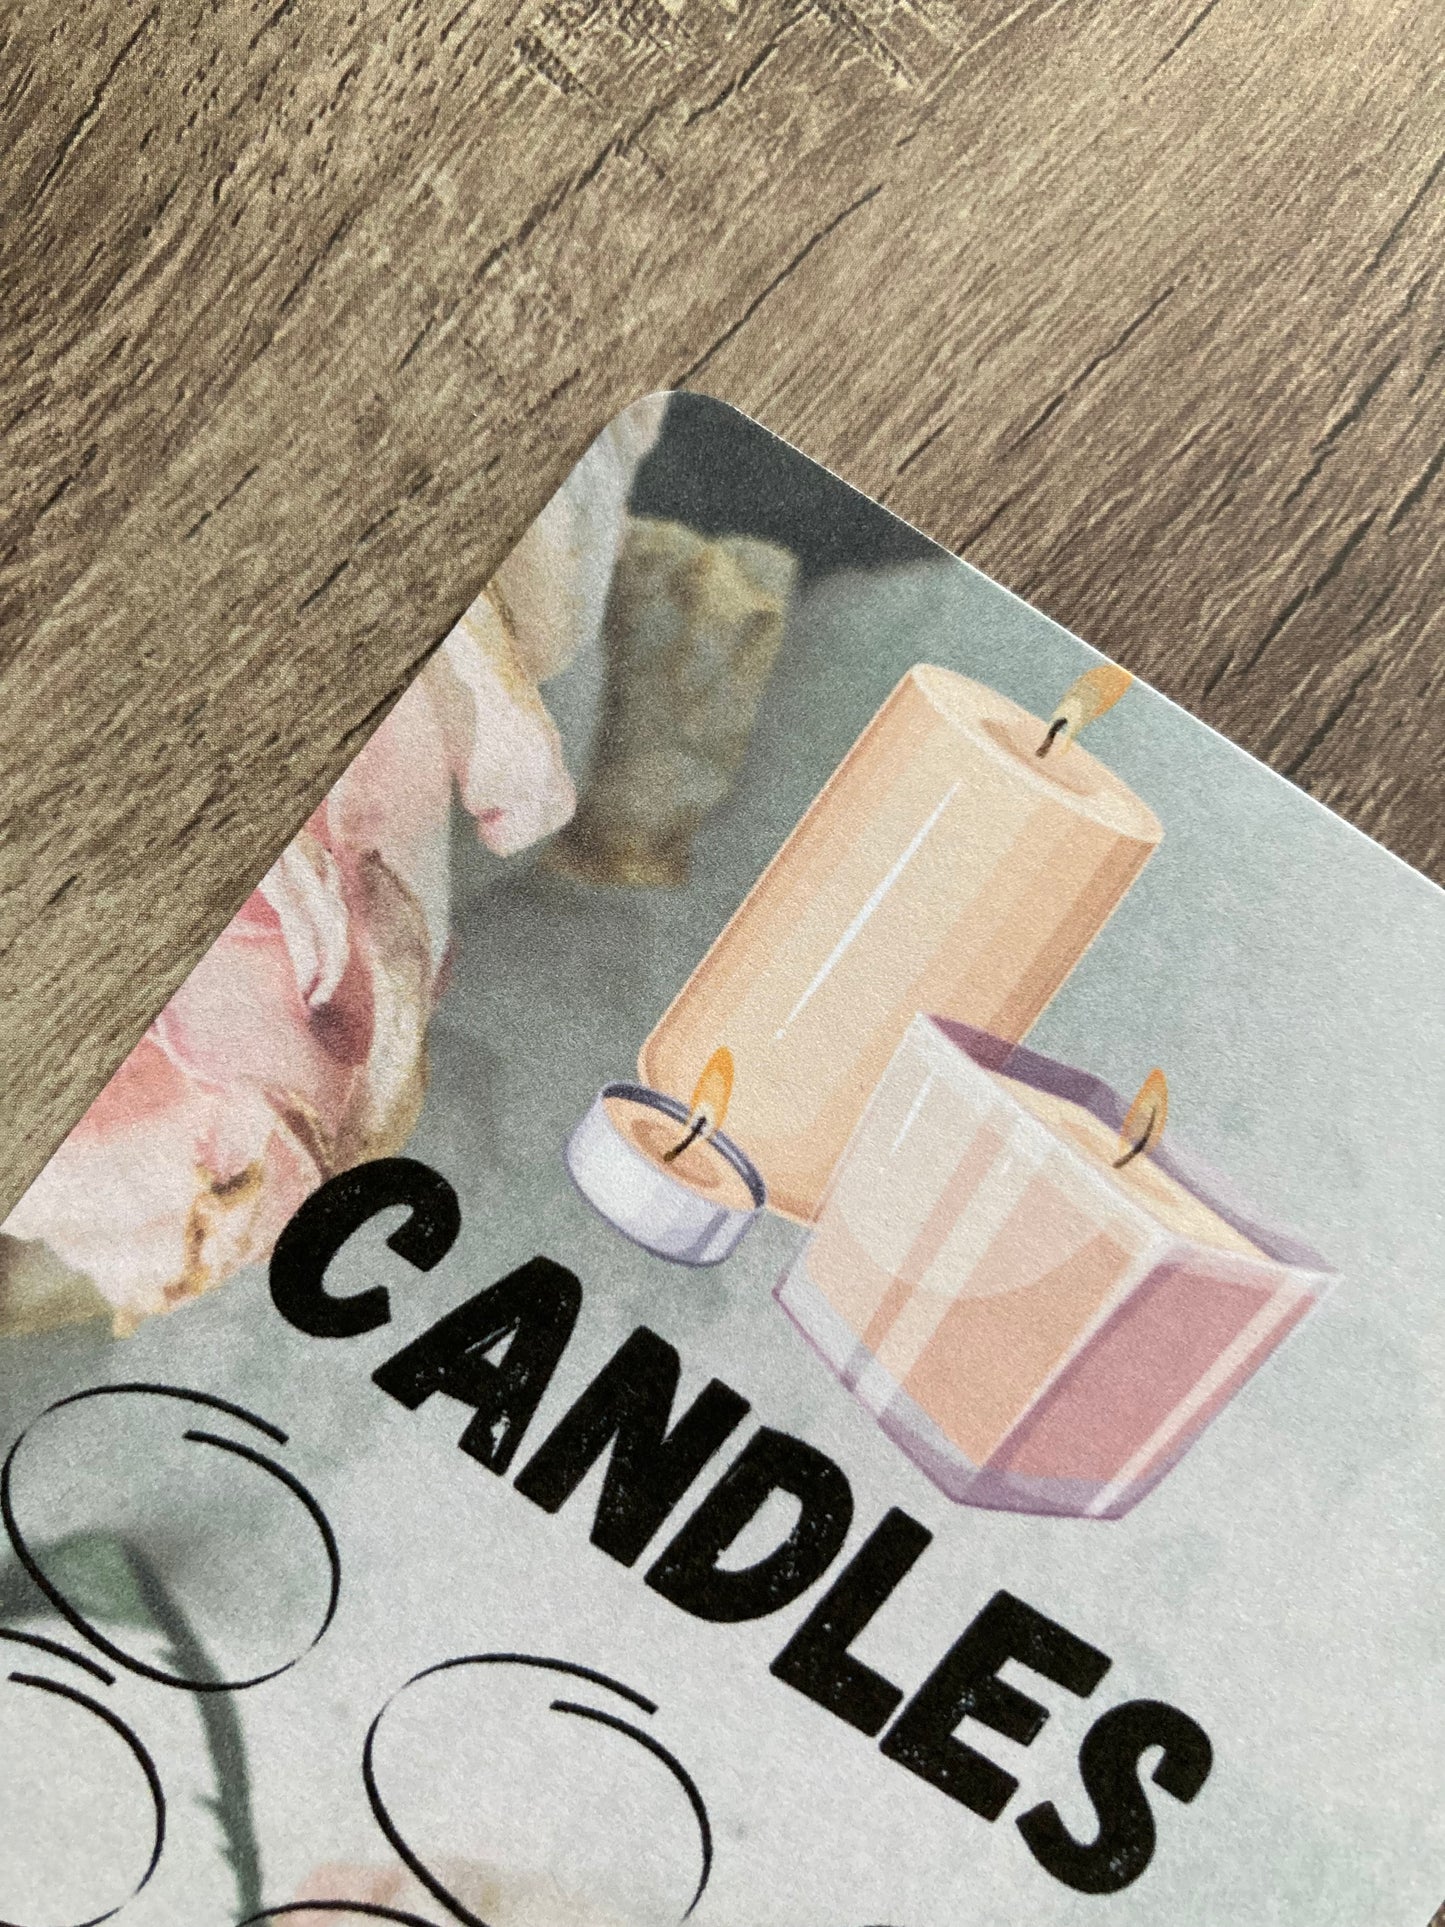 Saving challenge “candles”